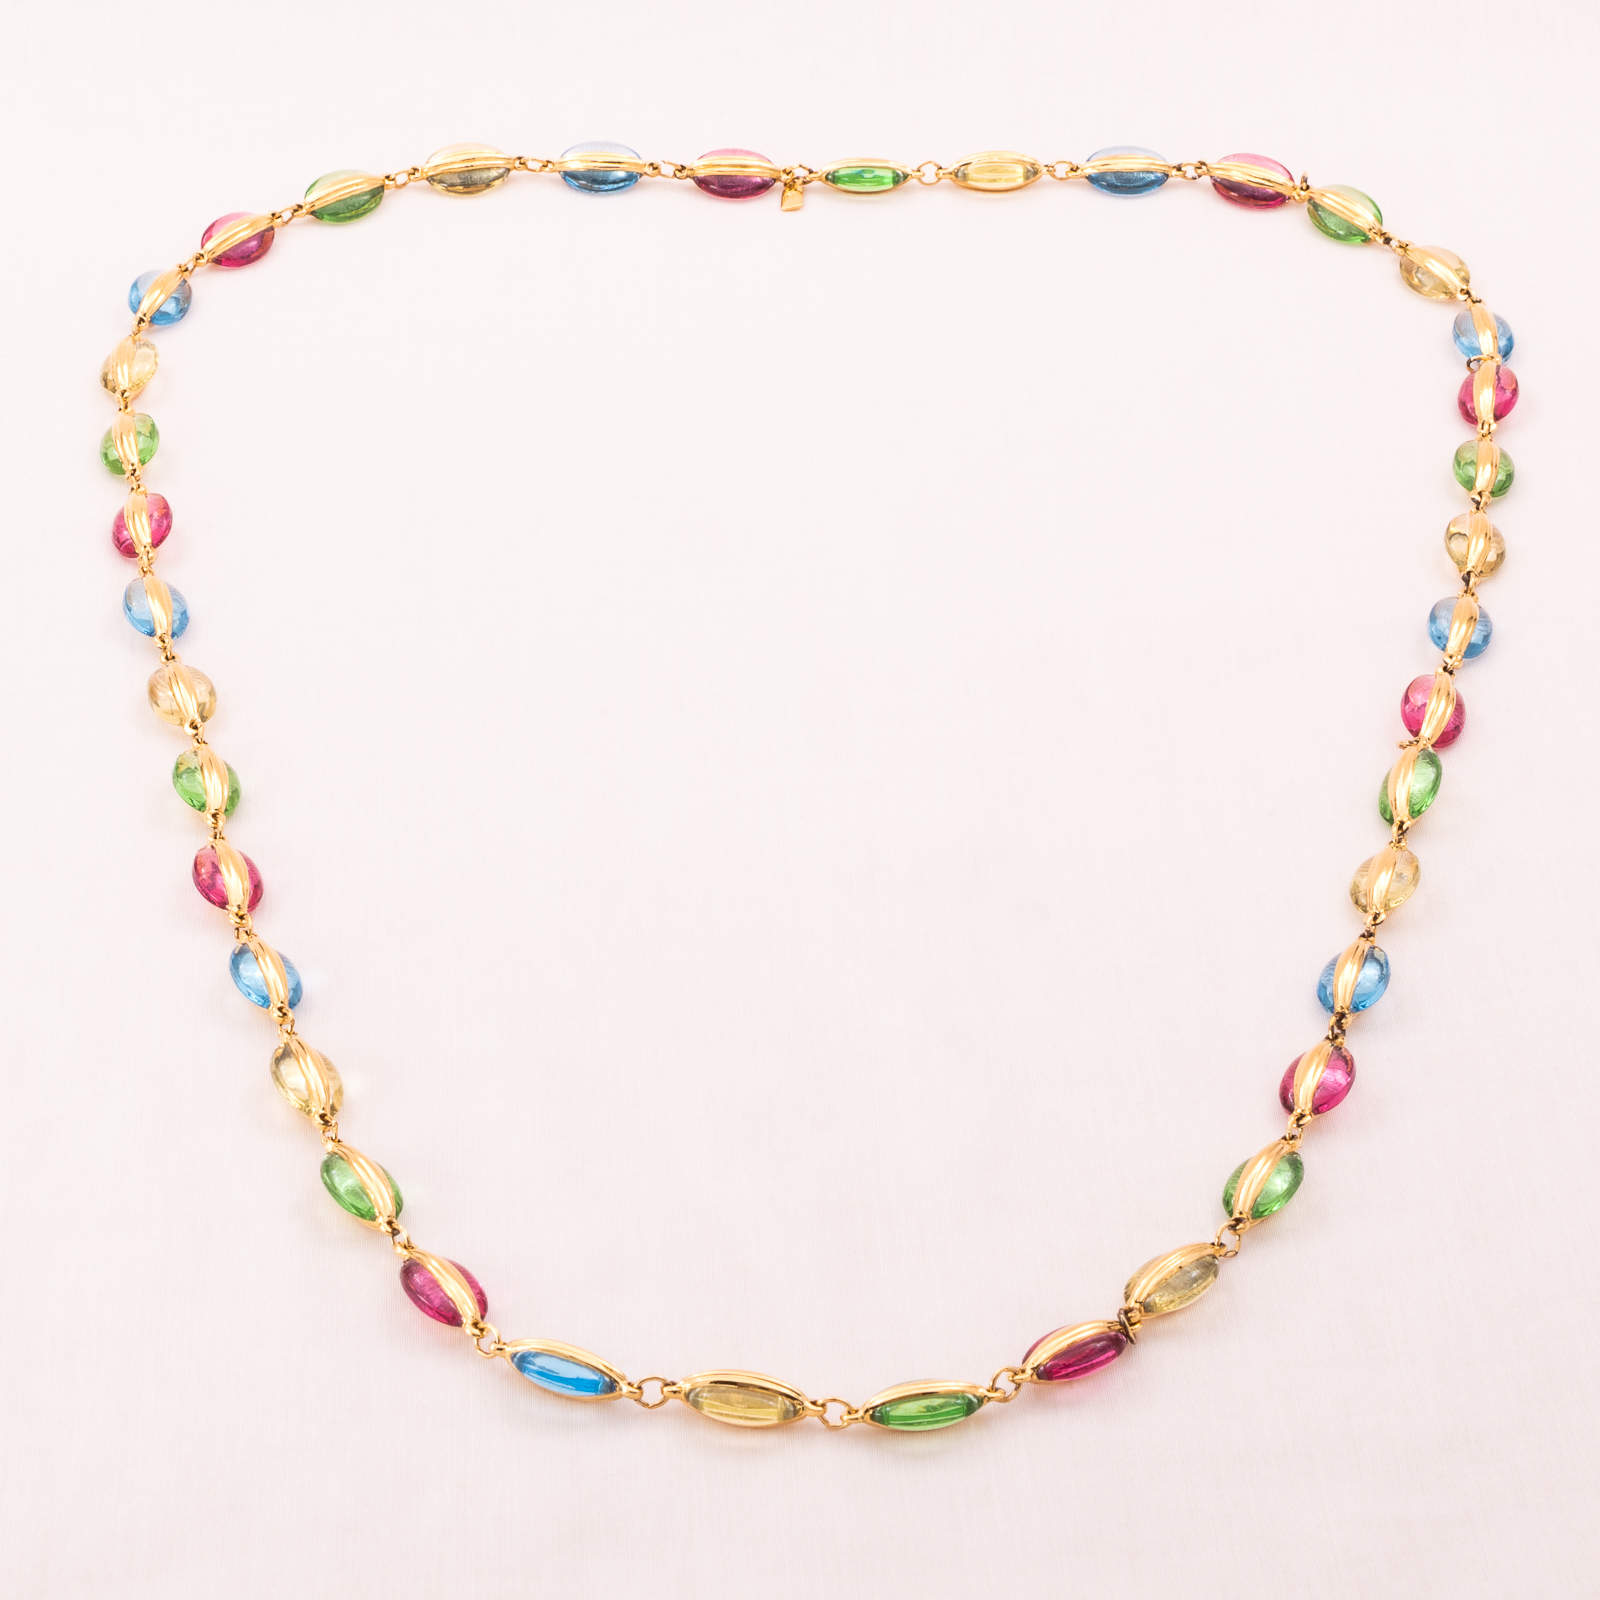 Swarovski-bunte-Halskette-ovale-Kristalle-vergoldete-Fassung